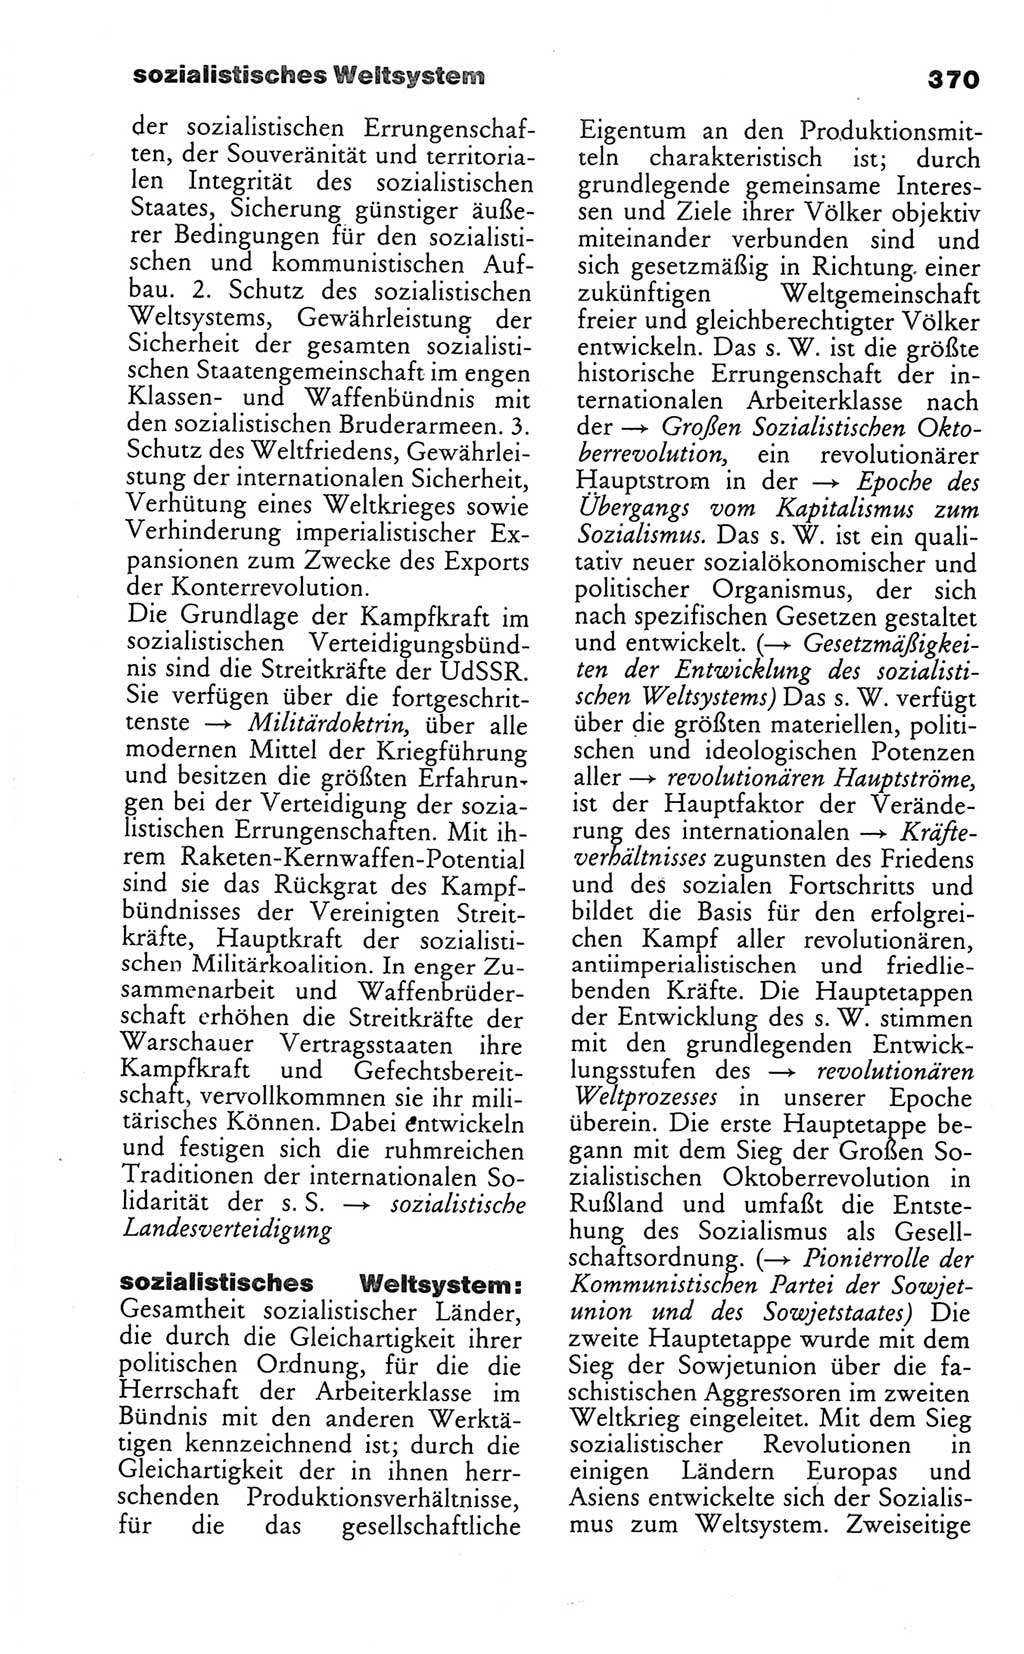 Wörterbuch des wissenschaftlichen Kommunismus [Deutsche Demokratische Republik (DDR)] 1986, Seite 370 (Wb. wiss. Komm. DDR 1986, S. 370)